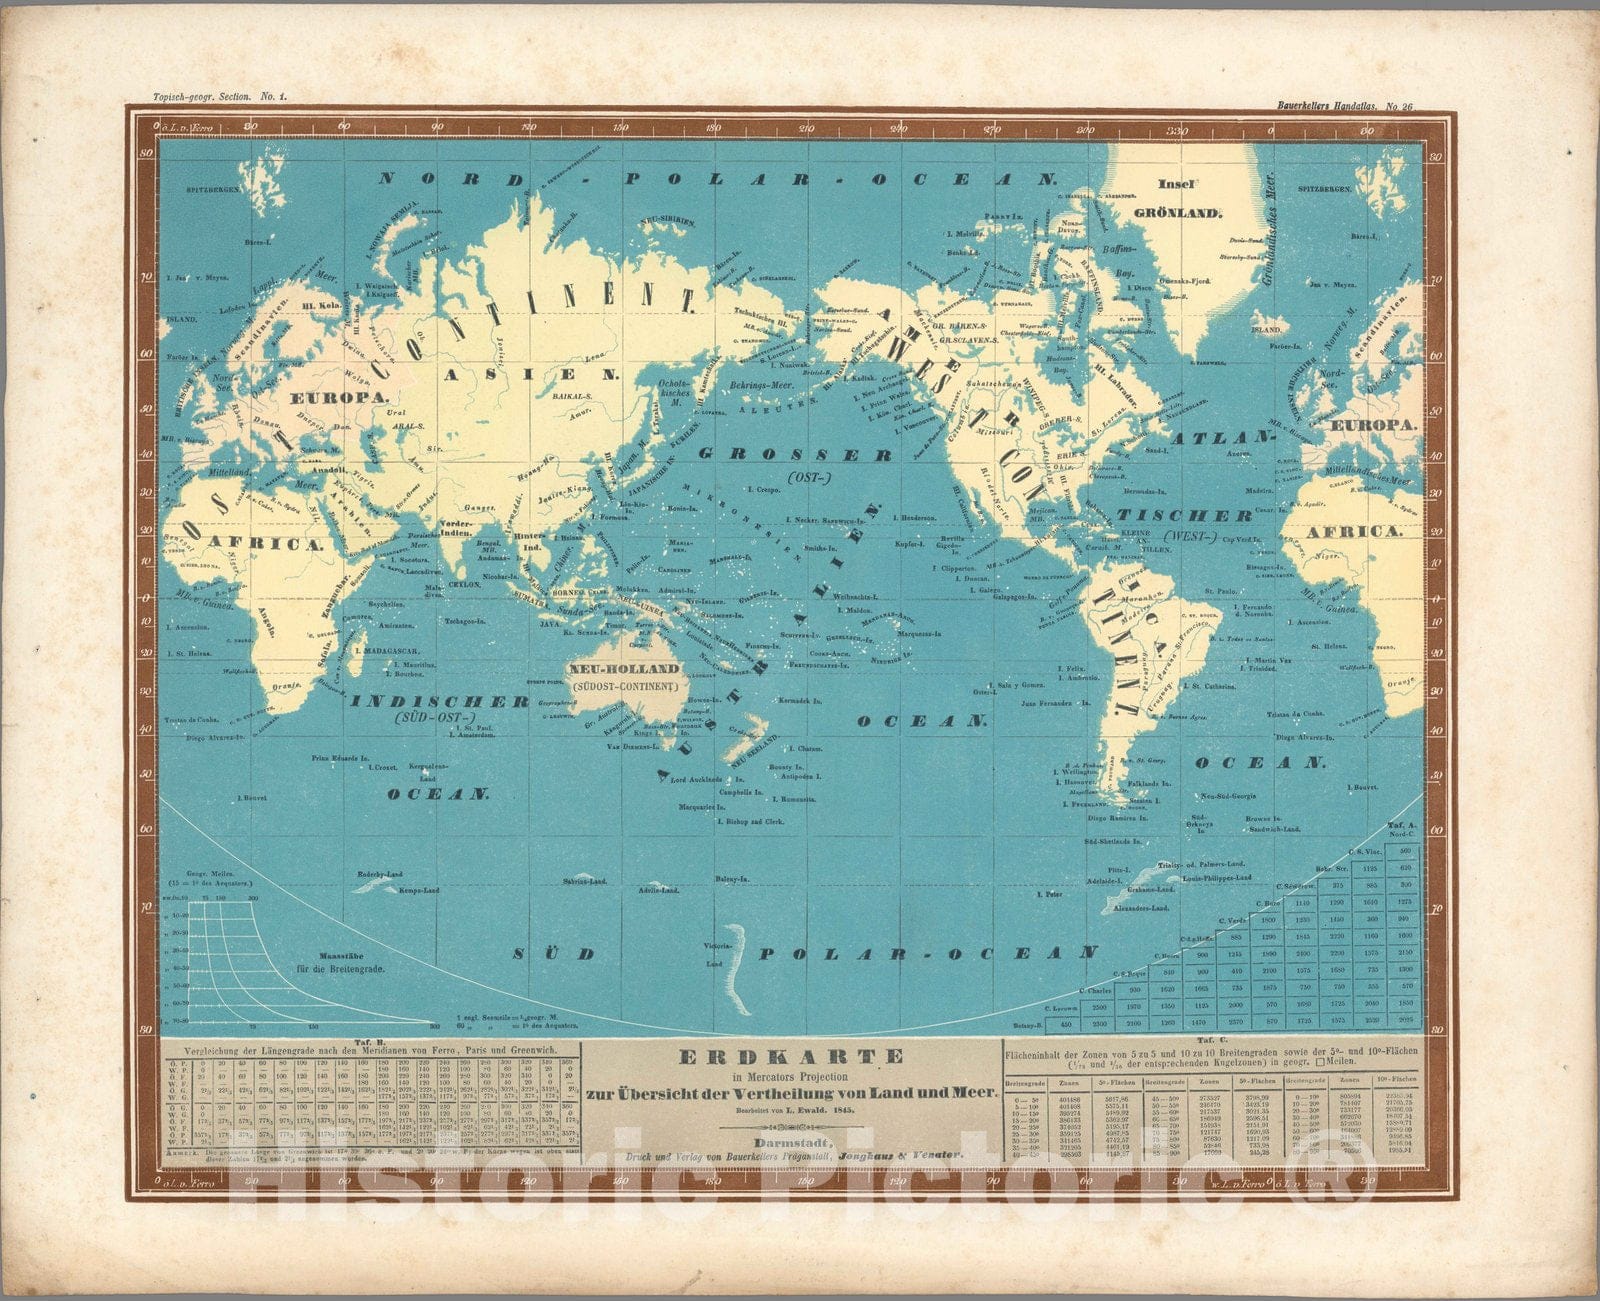 Historic Map : World Atlas Map, No. 26. Erdkarte in Mercators Projection zur Uebersicht der Vertheilung von Land und Meer. 1845 - Vintage Wall Art